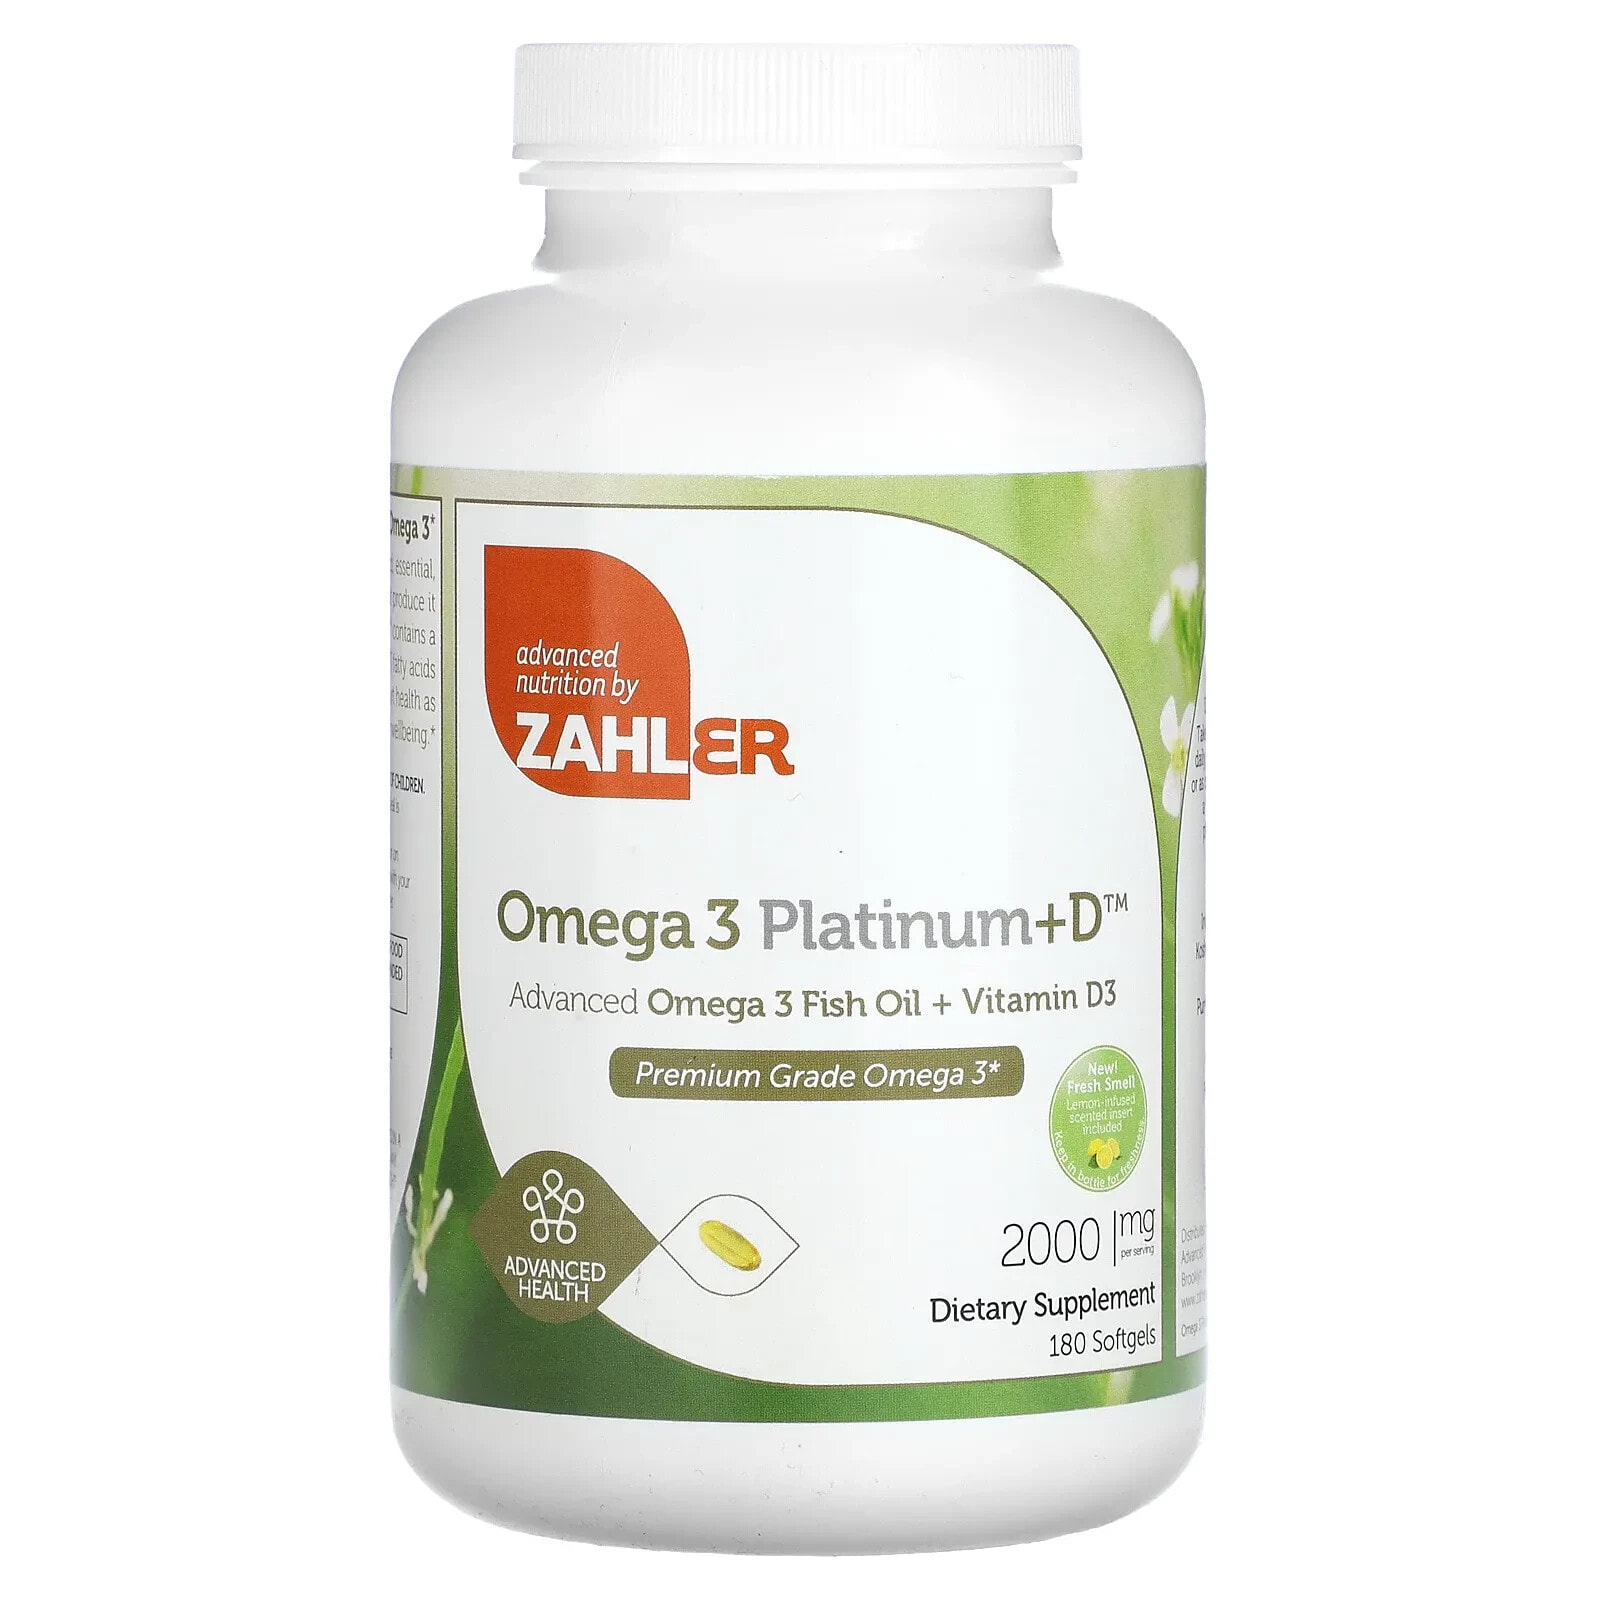 Omega 3 Platinum+D, Advanced Omega 3 Fish Oil + Vitamin D3, 2,000 mg, 90 Softgels (1,000 mg per Softgel)